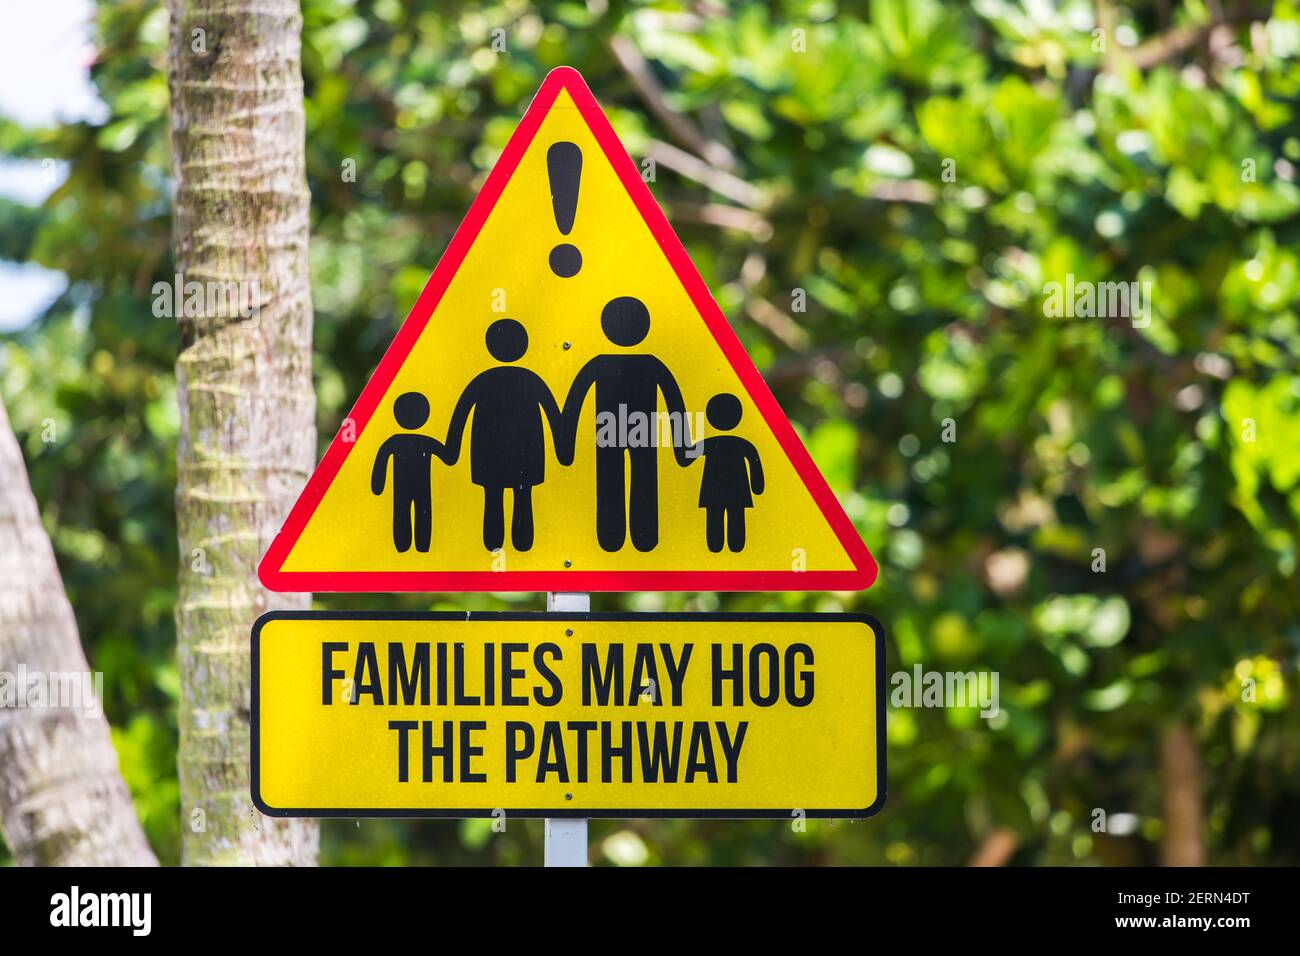 Ein dreieckiges Schild, um die Öffentlichkeit zu warnen, dass Familien den Weg hog, so dass jeder mit Geduld üben müssen. Singapur. Stockfoto